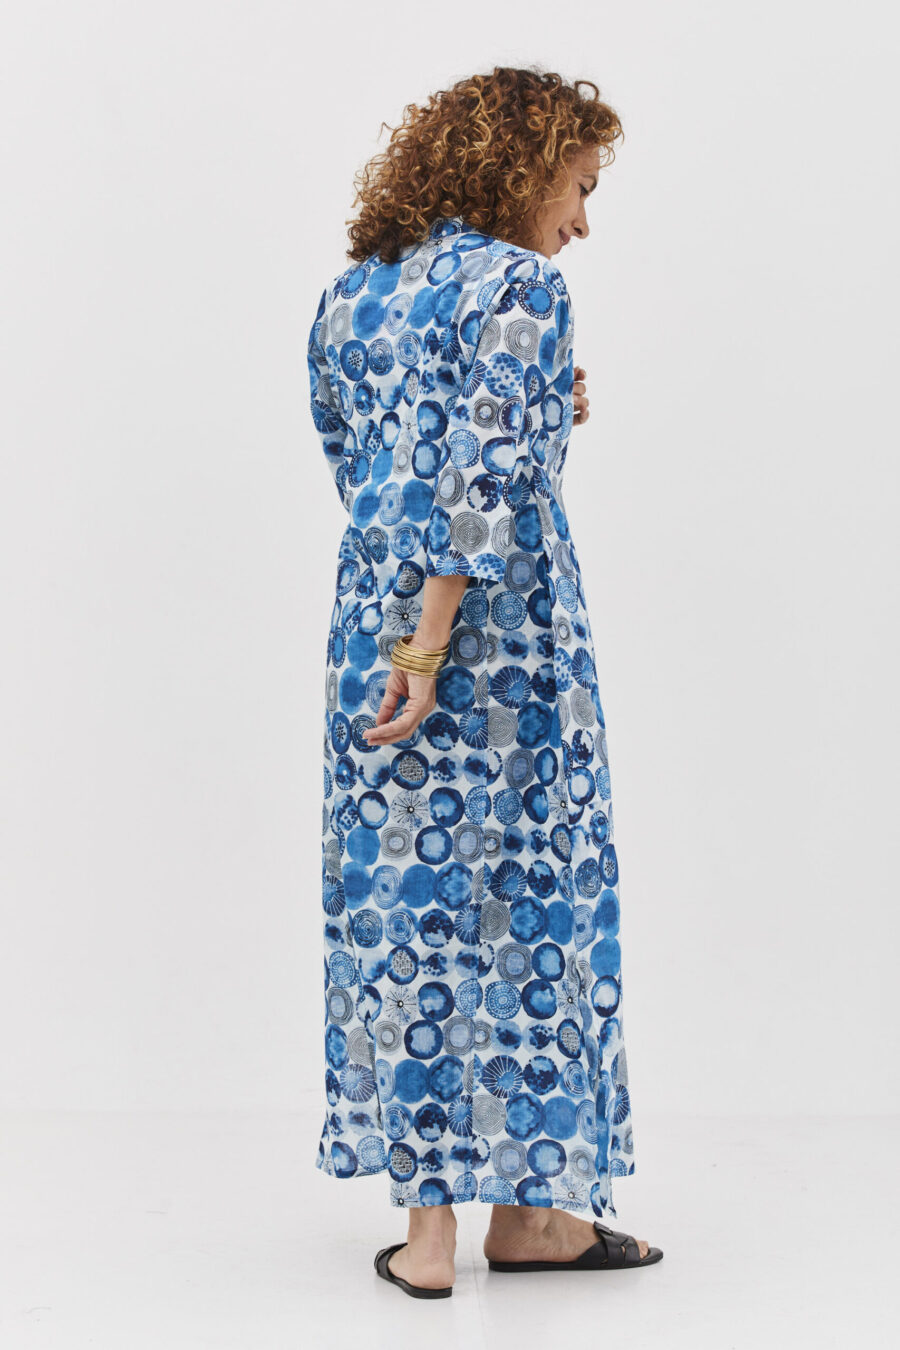 גלביה לנשים | גלבייה בעיצוב ייחודי - הדפס אוקיינוס, שמלה לבנה עם הדפס כדורים כחול